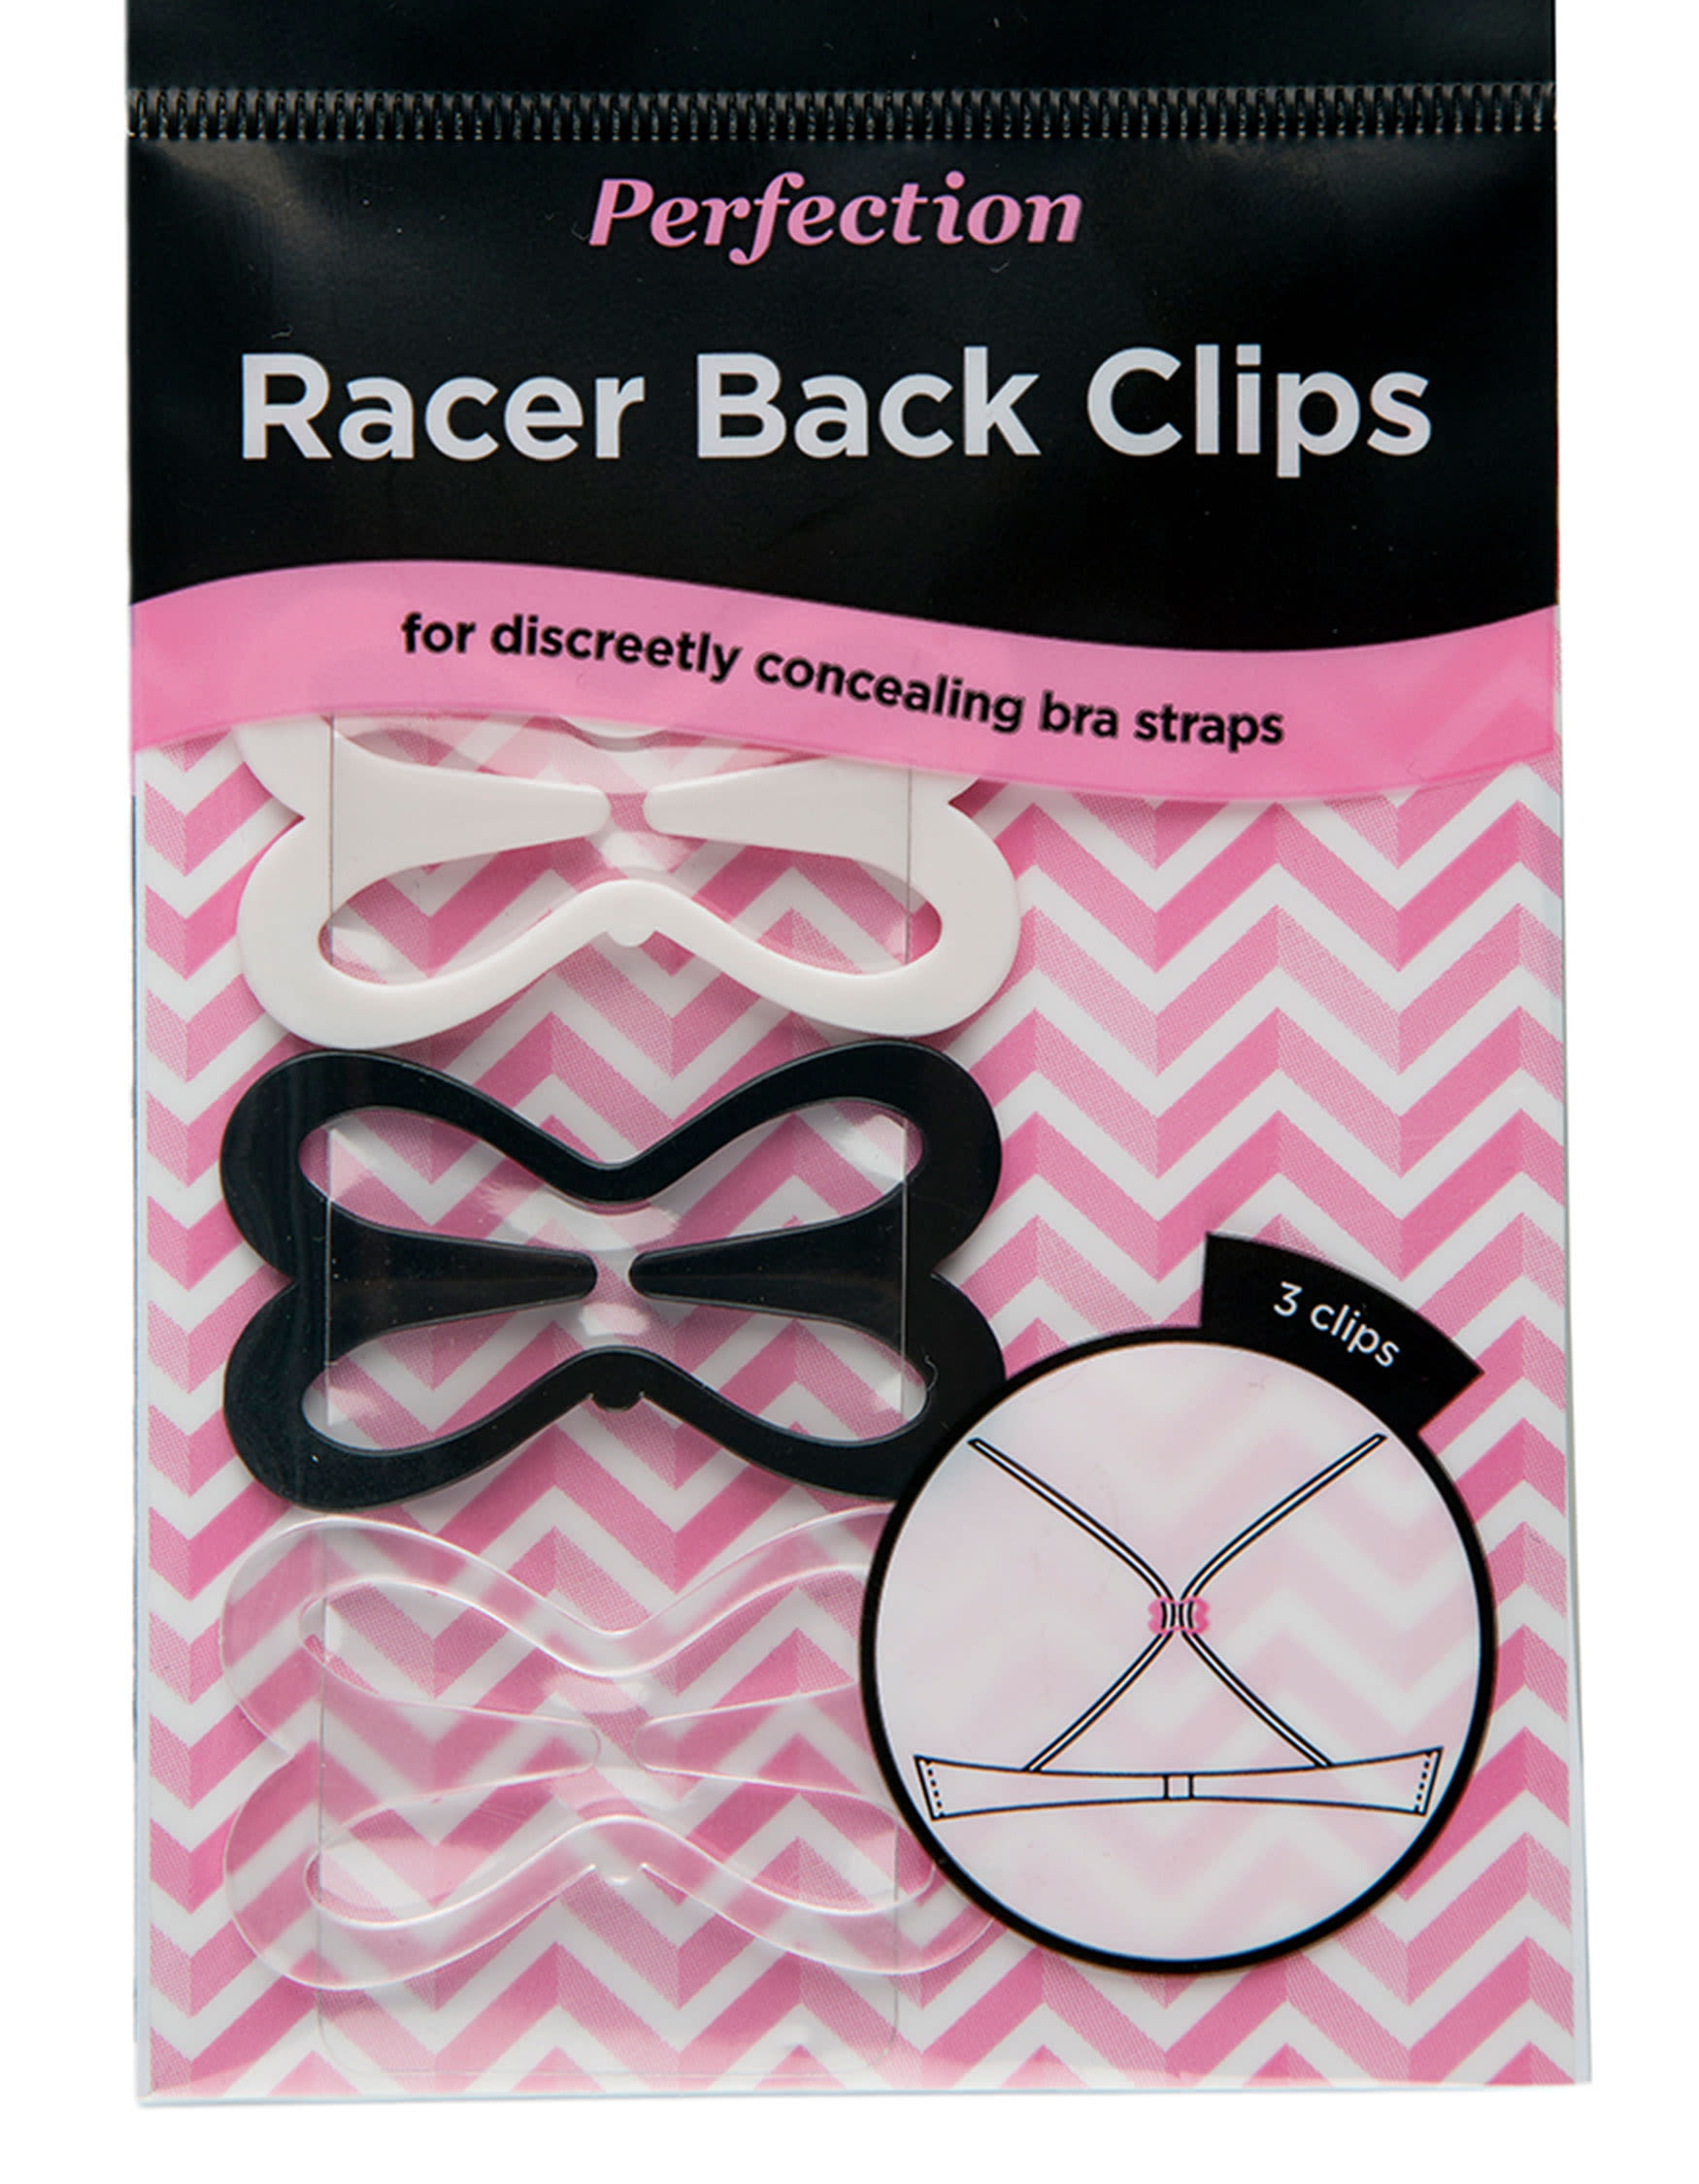 3-Pk of Racer Back Bra Clips : $6.99